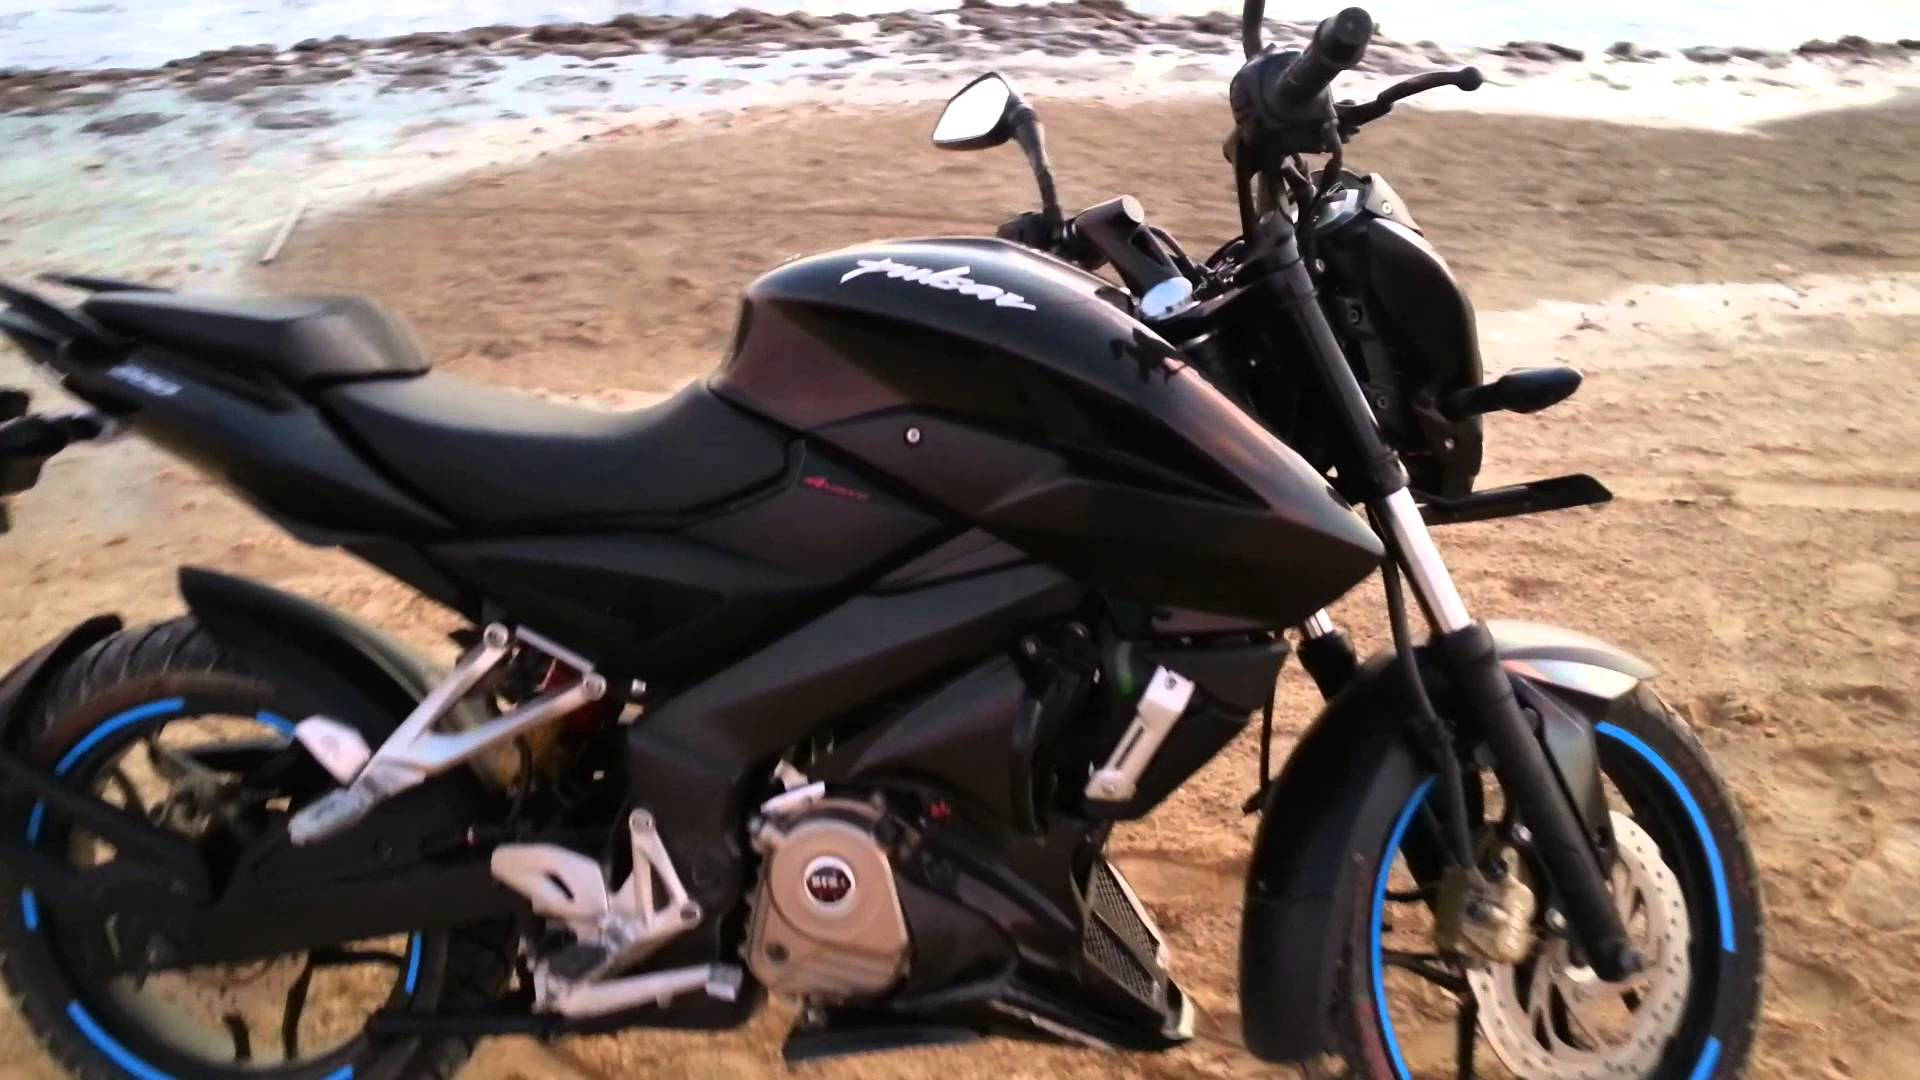 Ns 200 Motorcycle At Beach